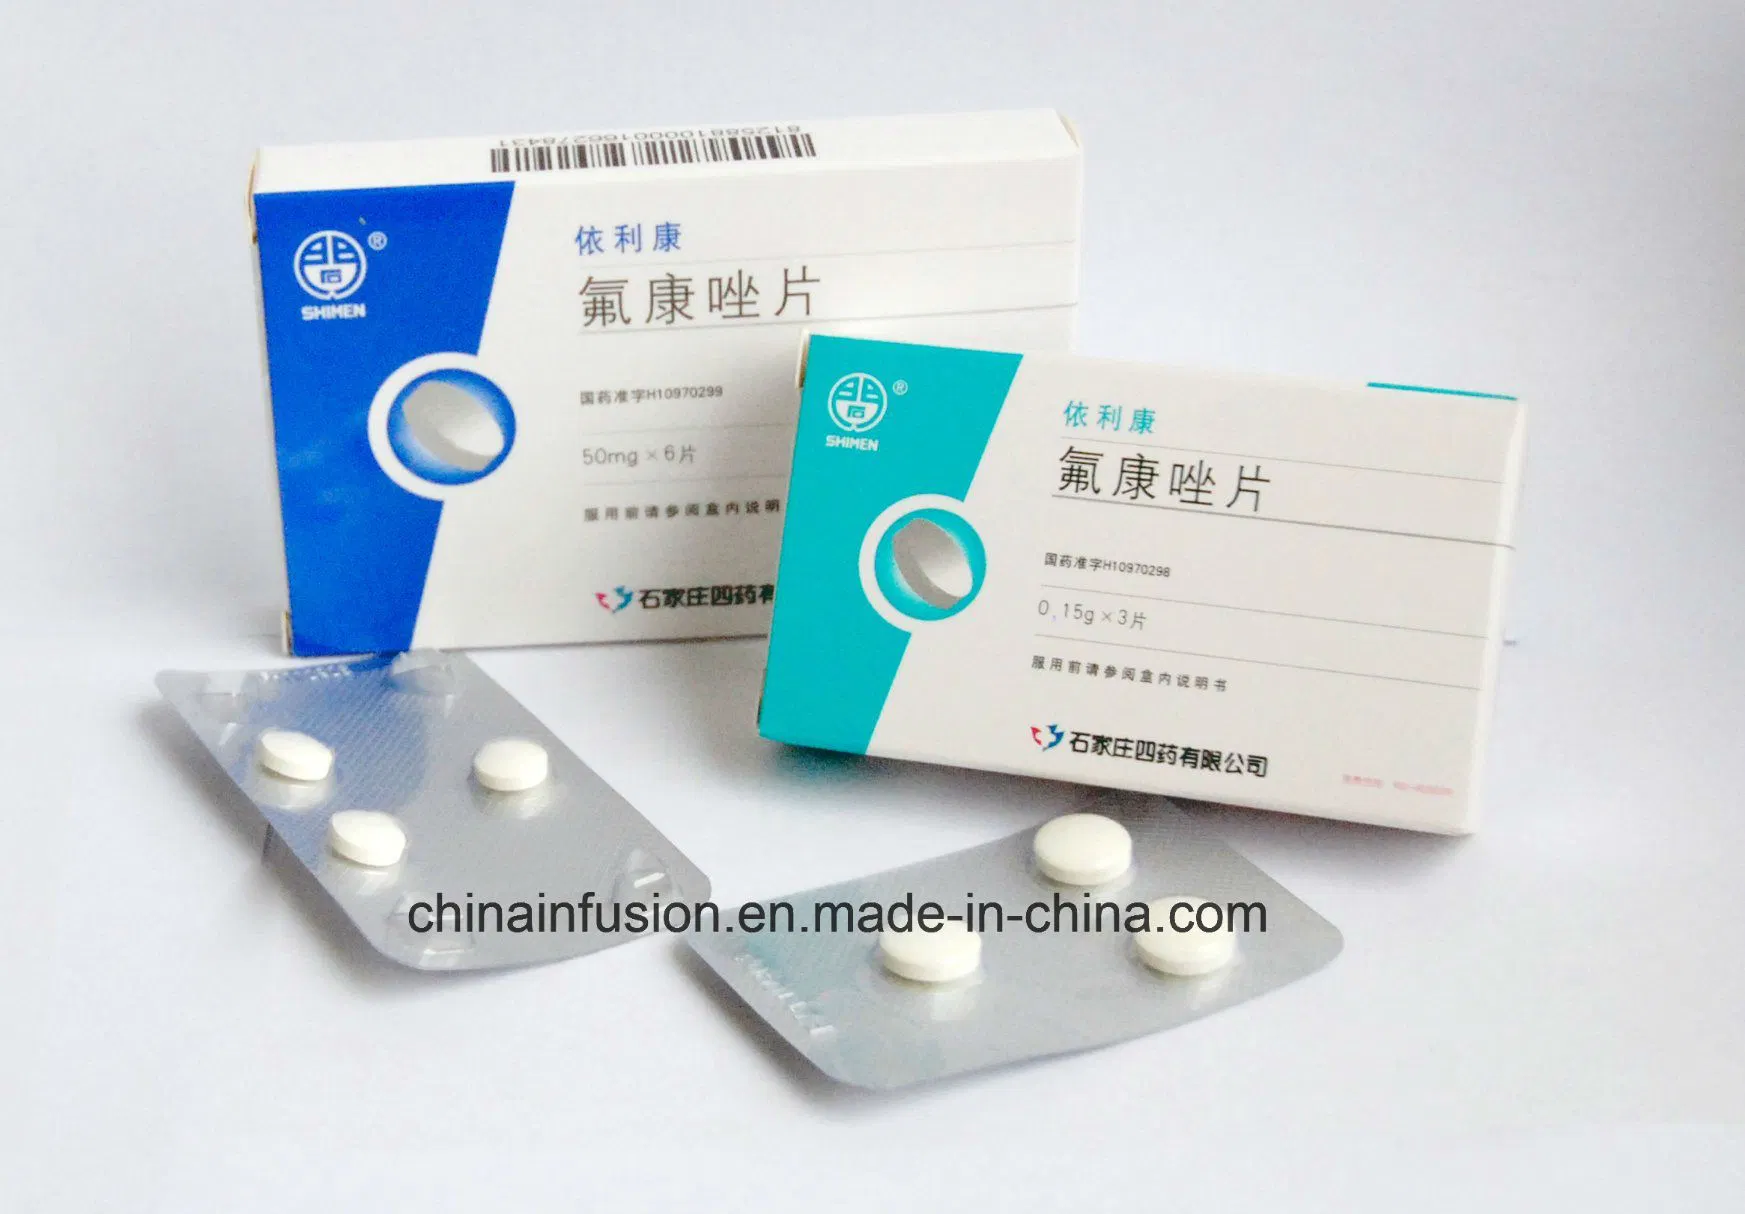 Fluconazol Tablette Western Medicine 50mg 150mg